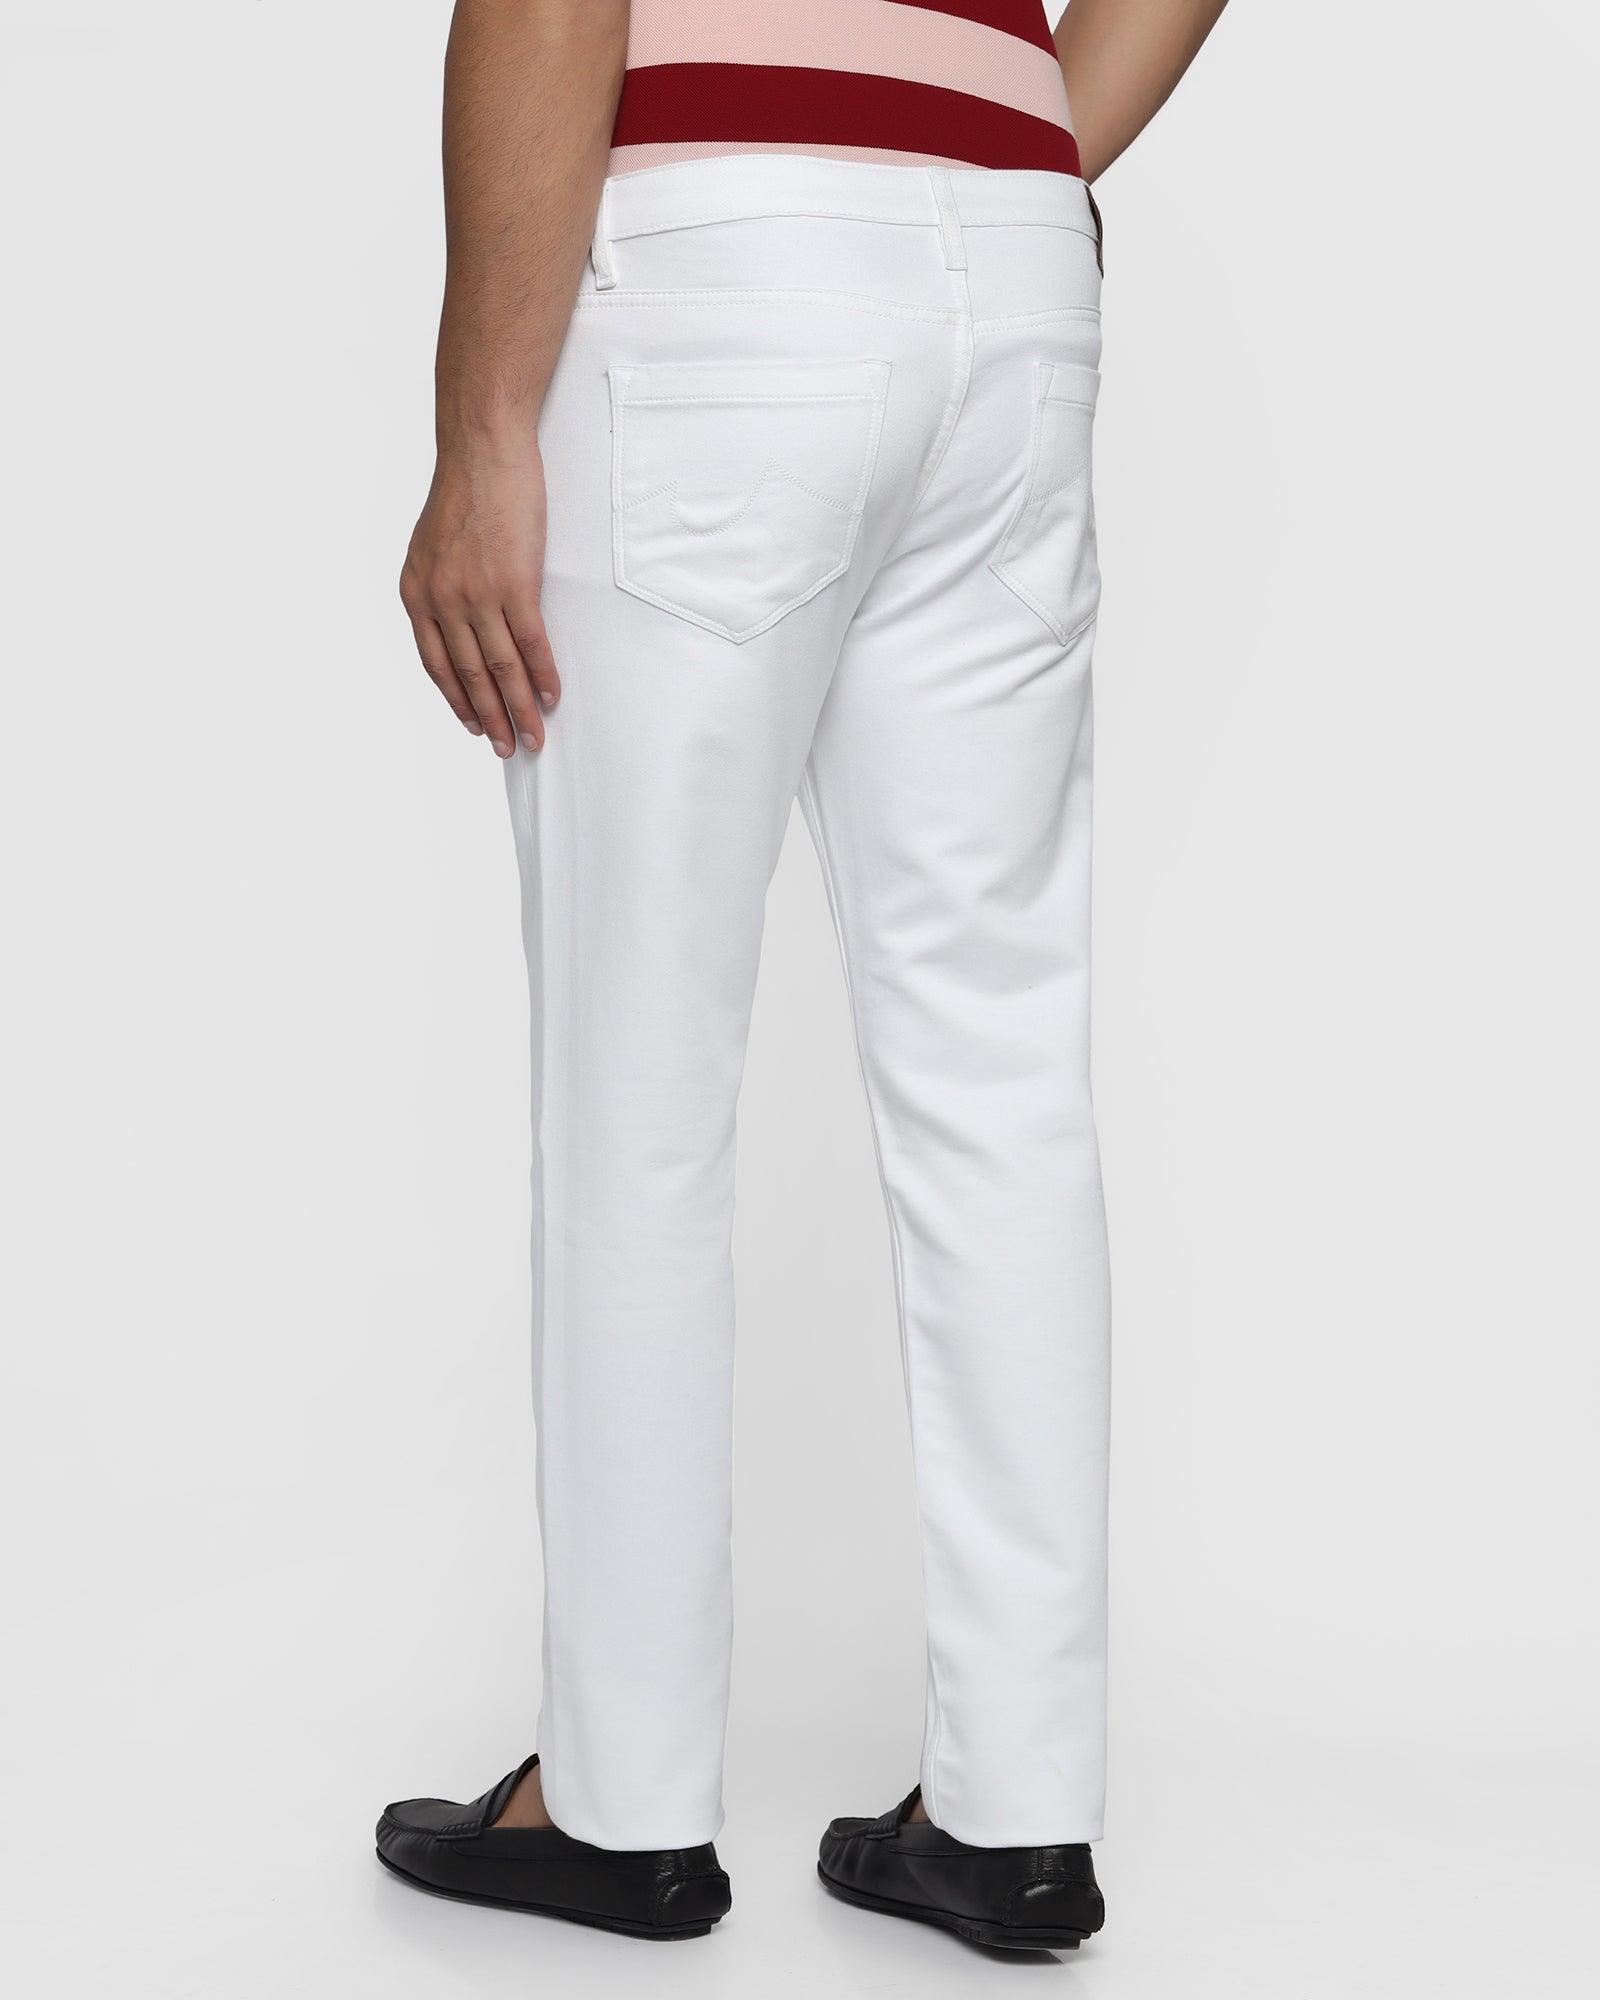 Bleed Zero Slim Yonk Fit White Jeans - Abto